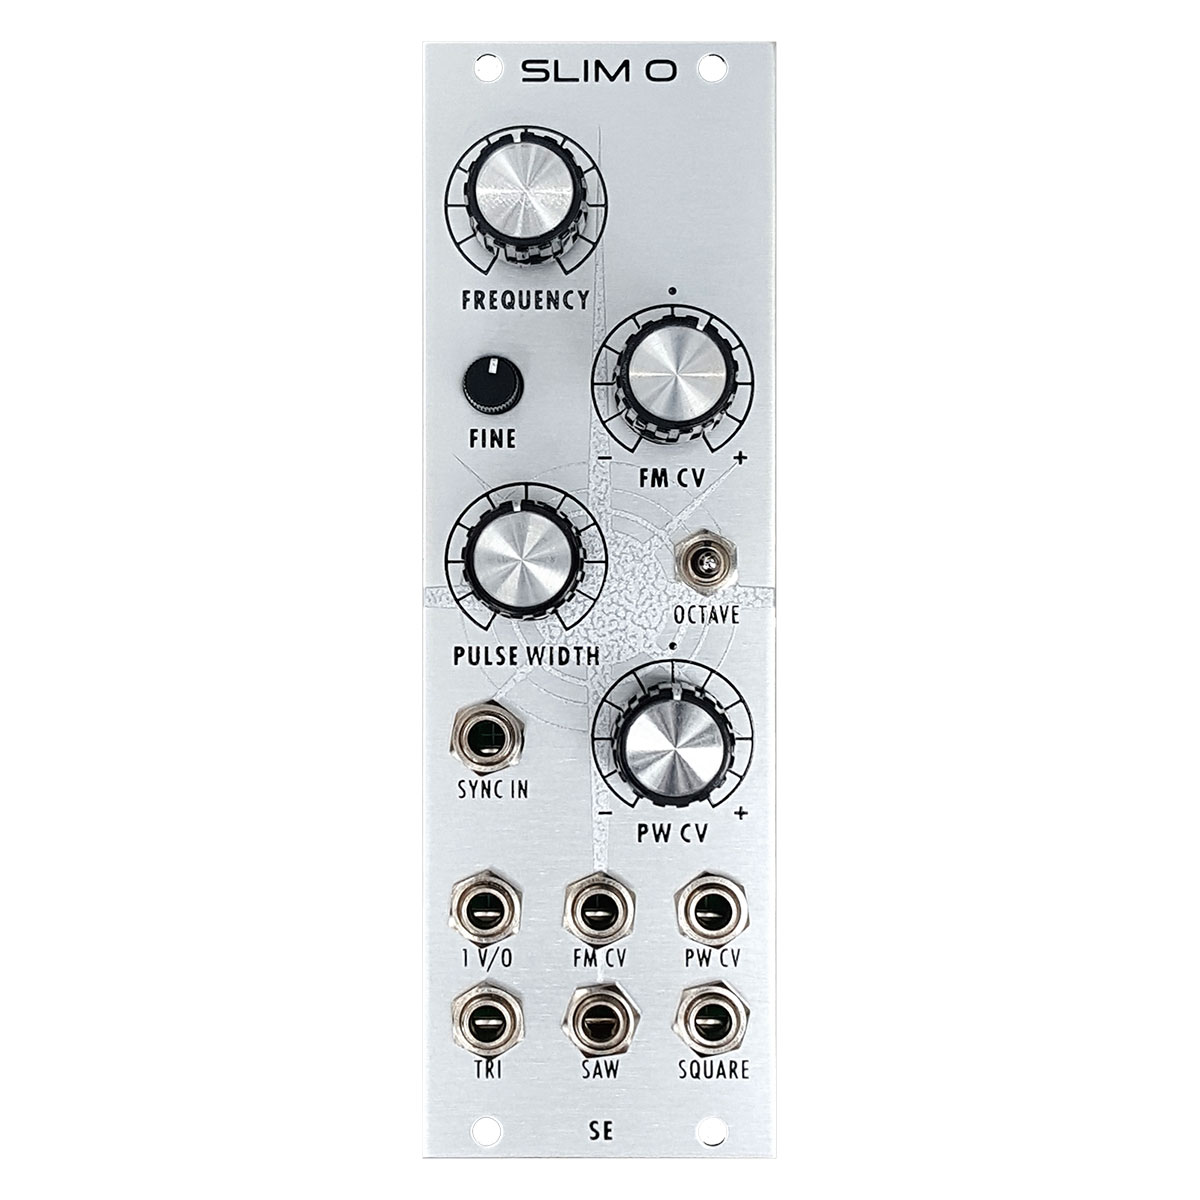 SLIM O - Studio Electronics - 有限会社 福産起業 - FUKUSAN KIGYO CO 